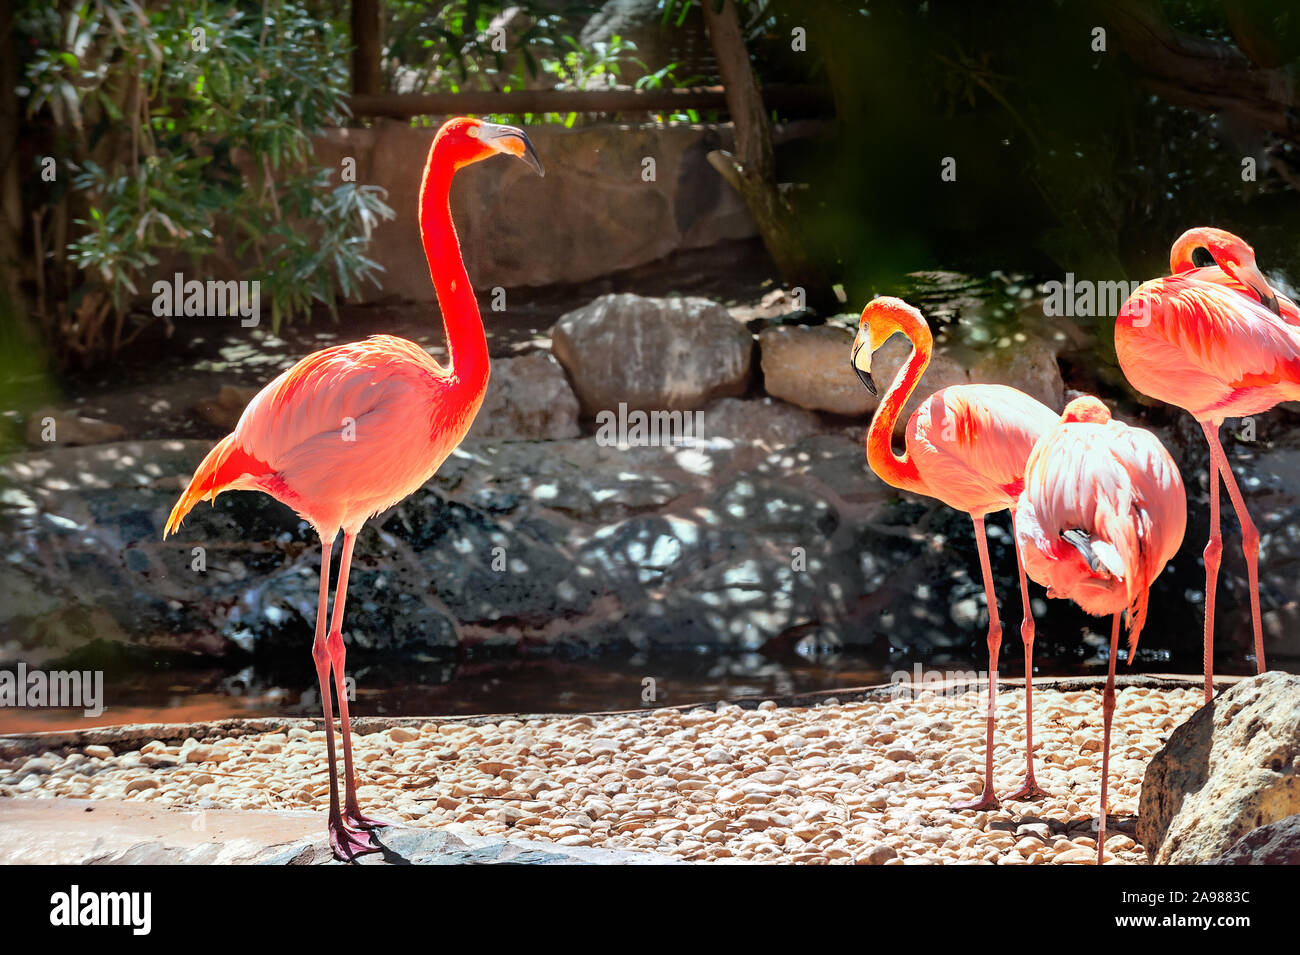 Bunte flamingo Vögel. Gran Canaria, Kanarische Inseln, Spanien Stockfoto